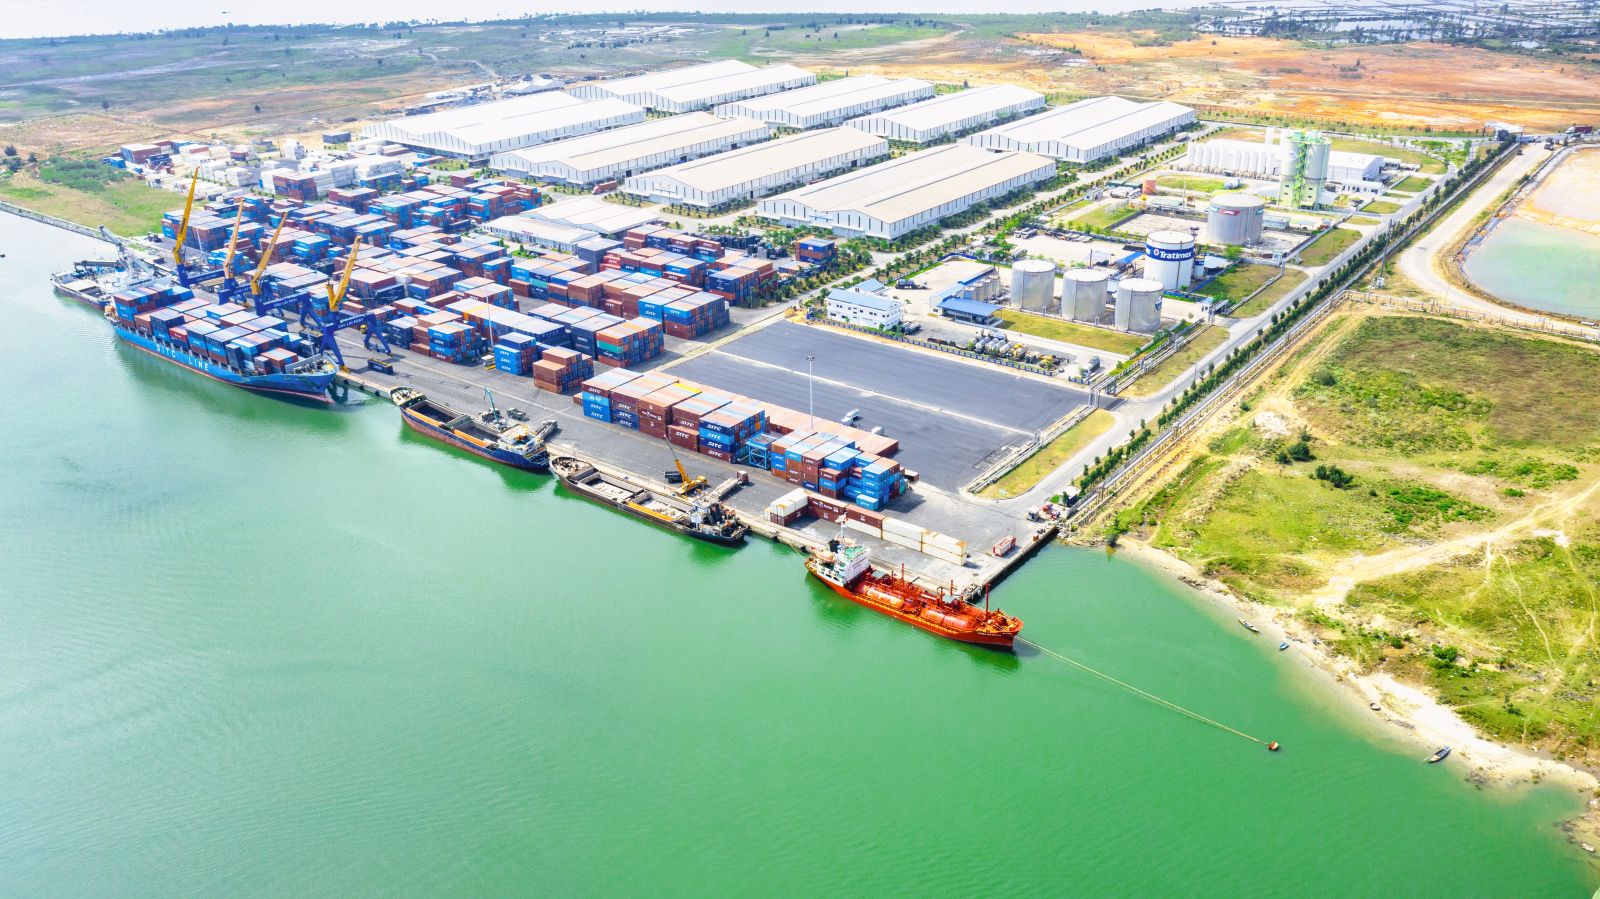 THILOGI mở rộng bãi cảng Chu Lai về phía thượng lưu